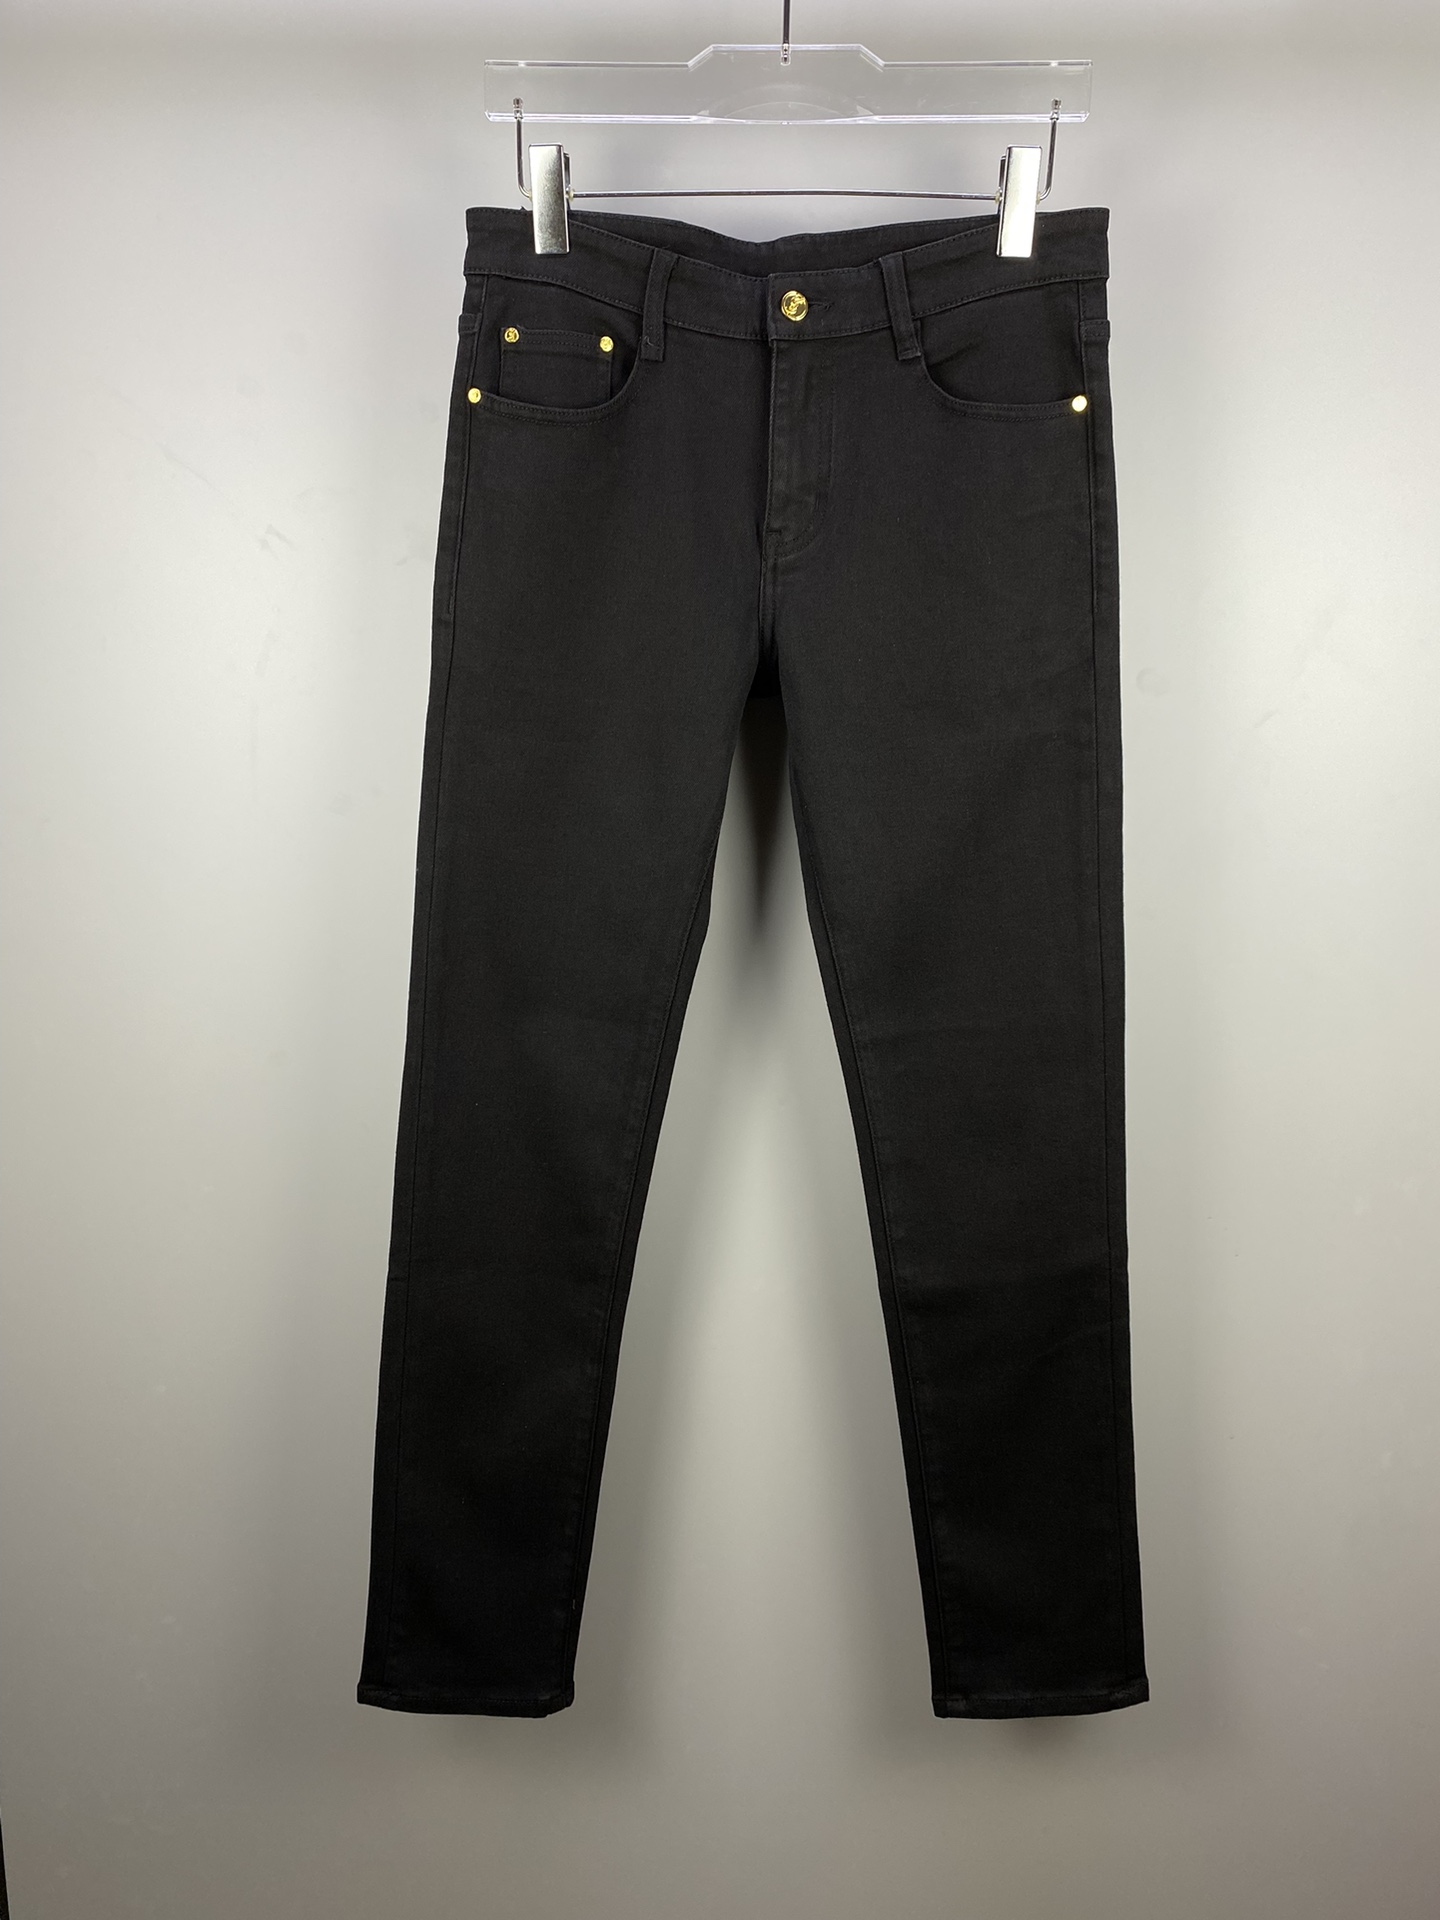 Yves Saint Laurent Clothing Jeans Shorts Black Cotton Vintage Casual